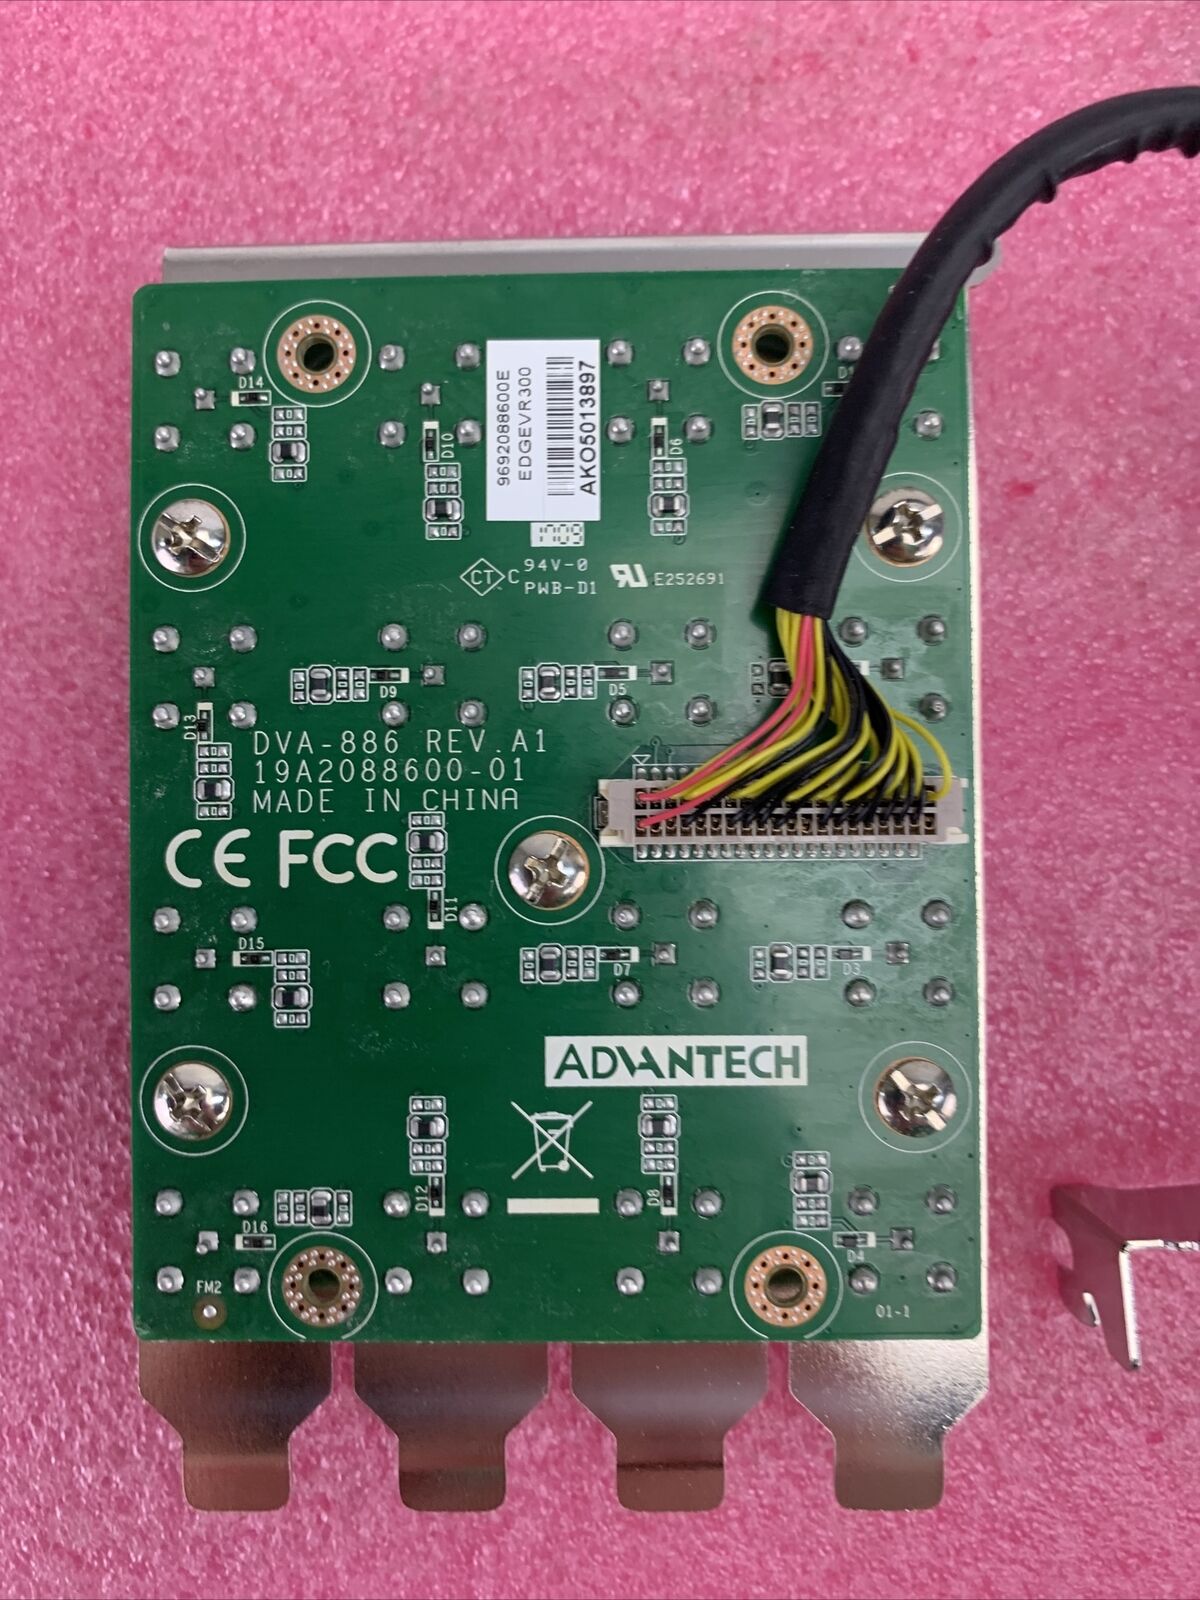 STRETCH VRC7016LX 16 Channel PCIe DVR Card w/ADVANTECH DVA-886 REV. A1